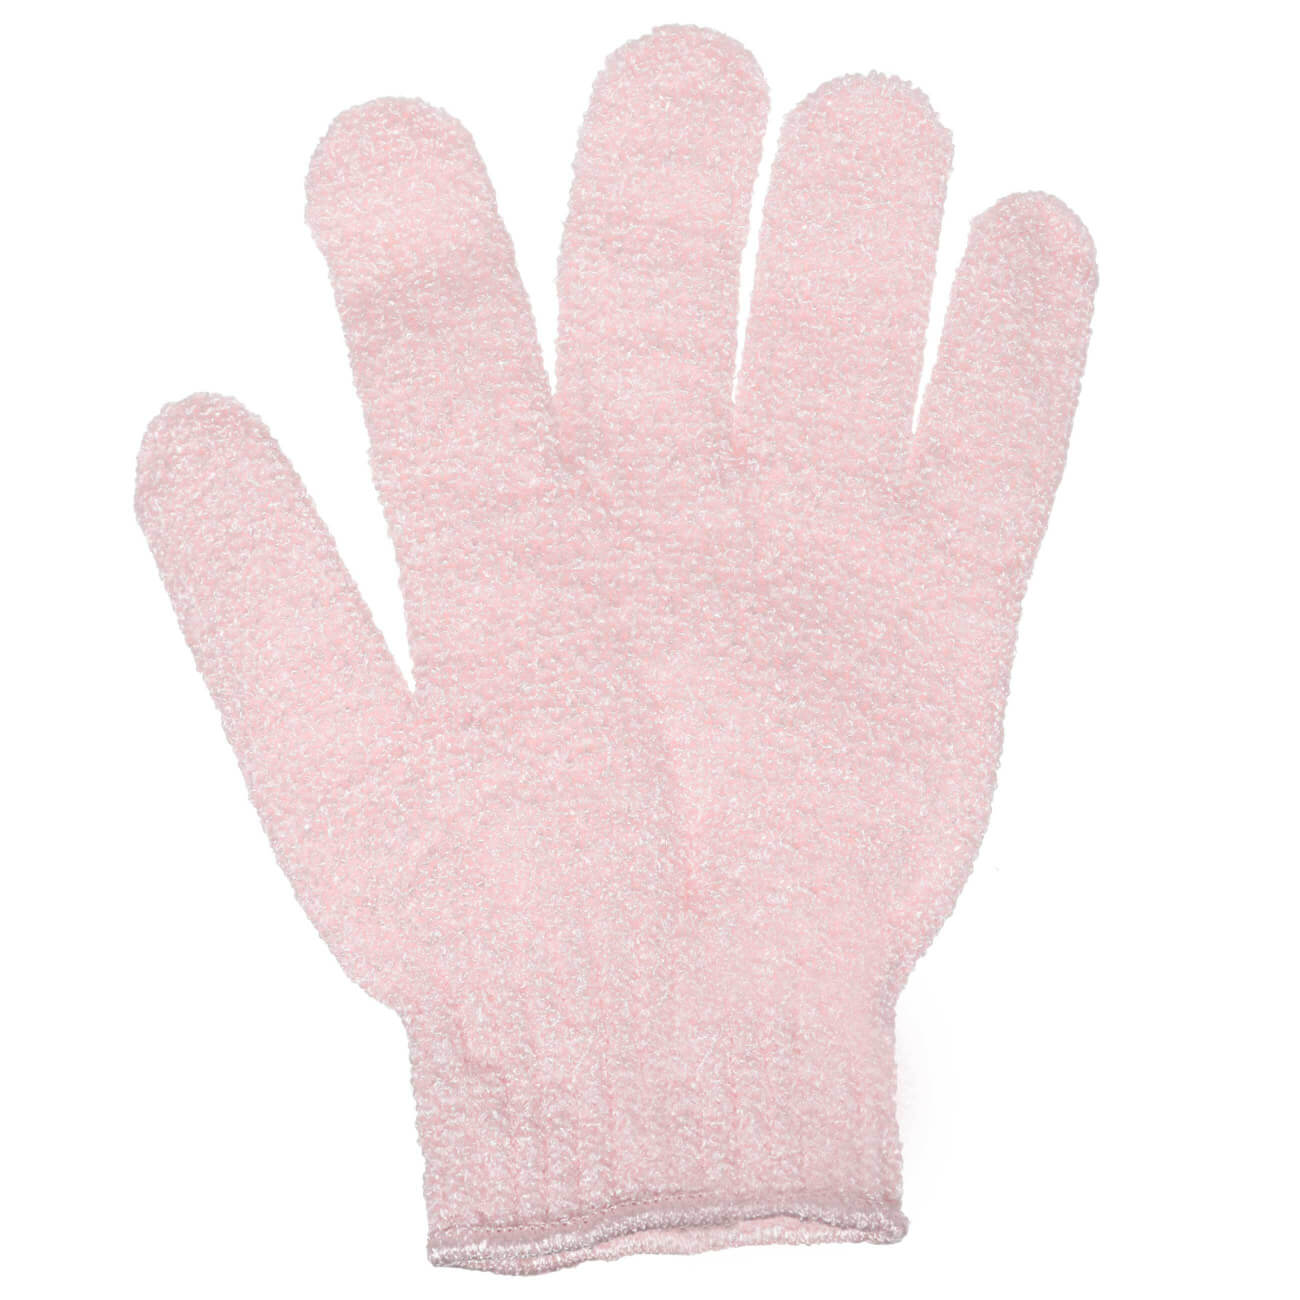 Перчатка для мытья тела, 20 см, 2 шт, отшелушивающая, нейлон, пудровая, Glamor изображение № 1